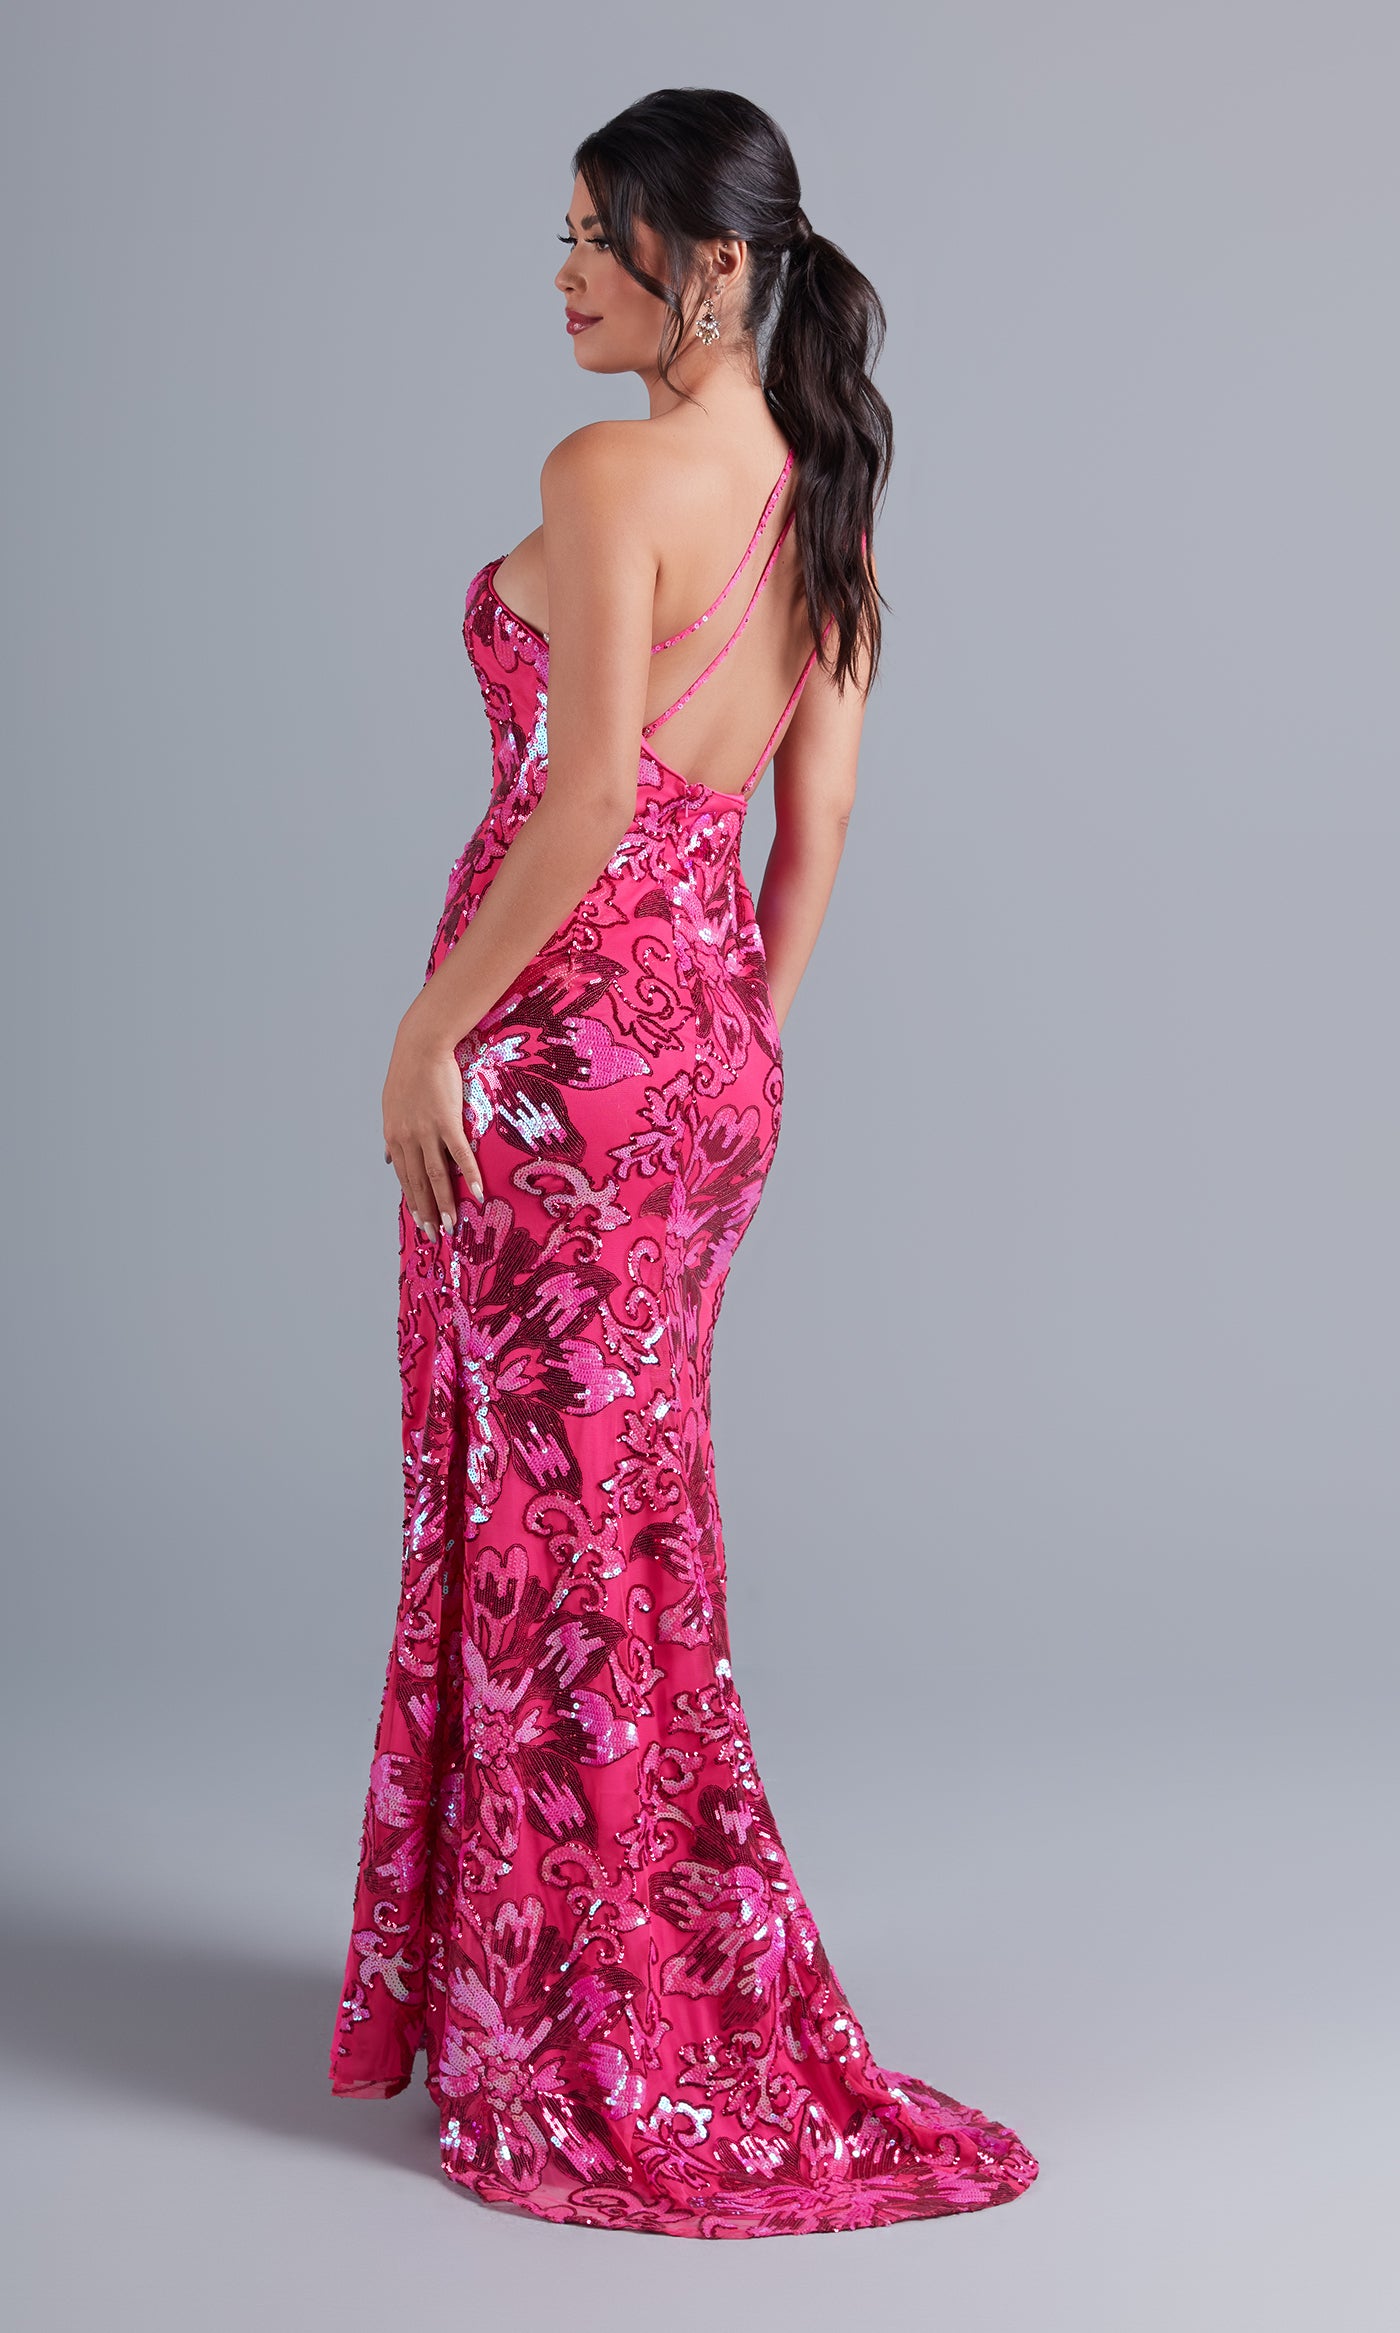  Hot Pink One-Shoulder Sequin Long Formal Dress